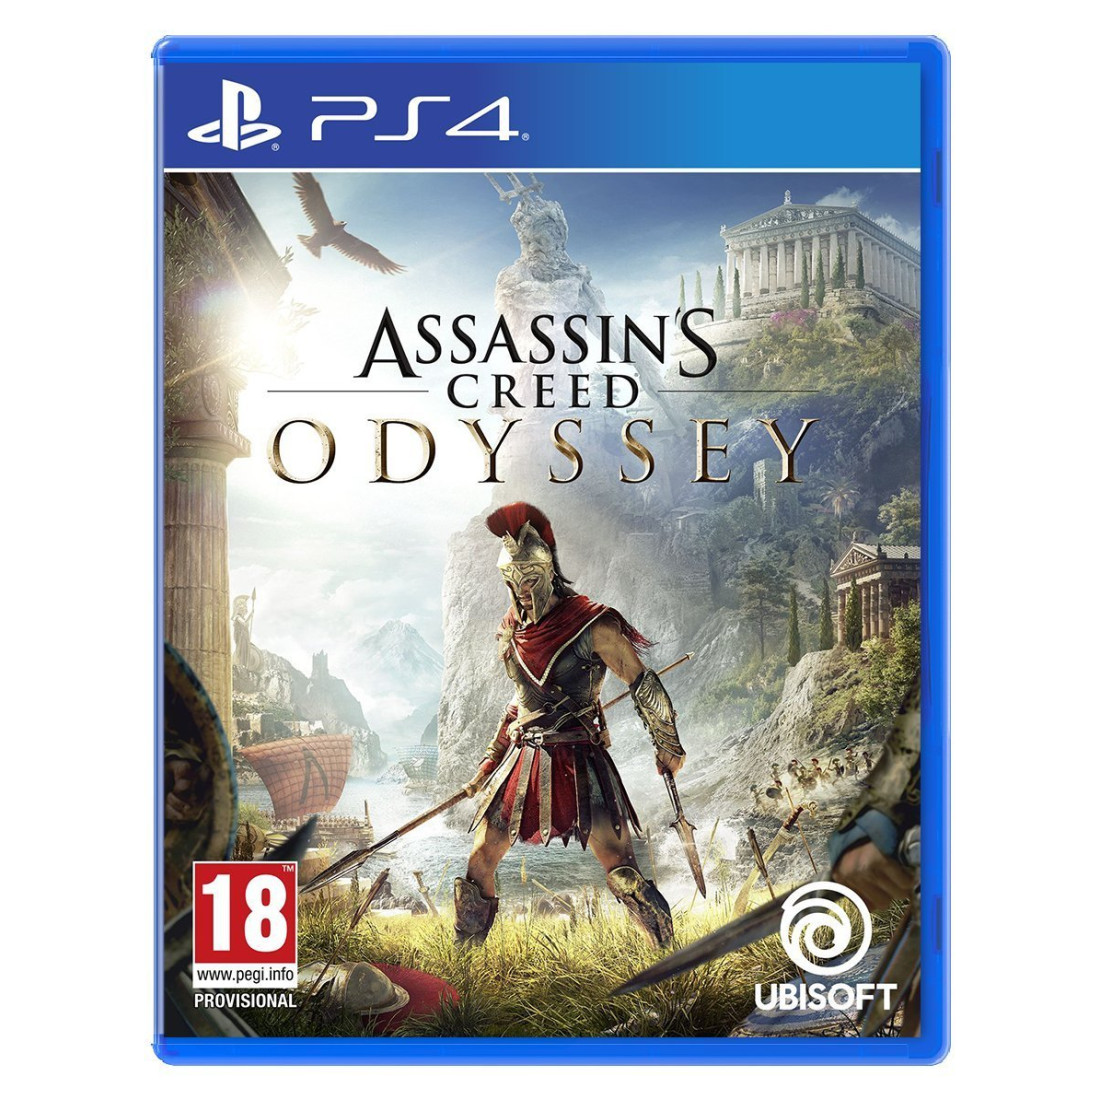 Assassins игра ps4. Assassin's Creed Odyssey ps4. Assassin's Creed Odyssey диск. Одиссея игра на пс4. Assassin's Creed Odyssey ps4 диск.